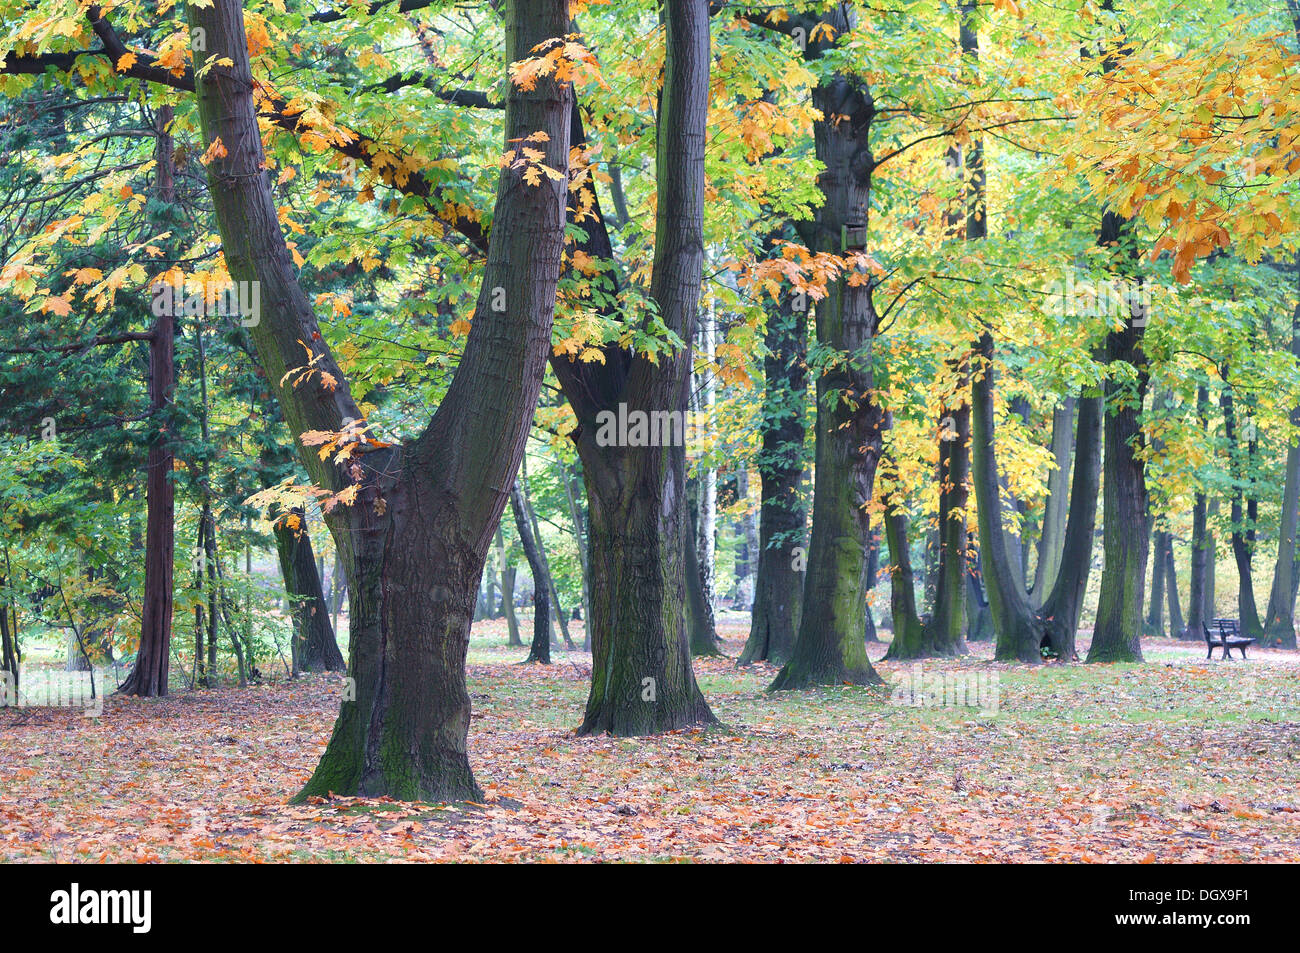 Reihe von alten Roteiche Bäumen im Herbst Farben Quercus rubra Stockfoto